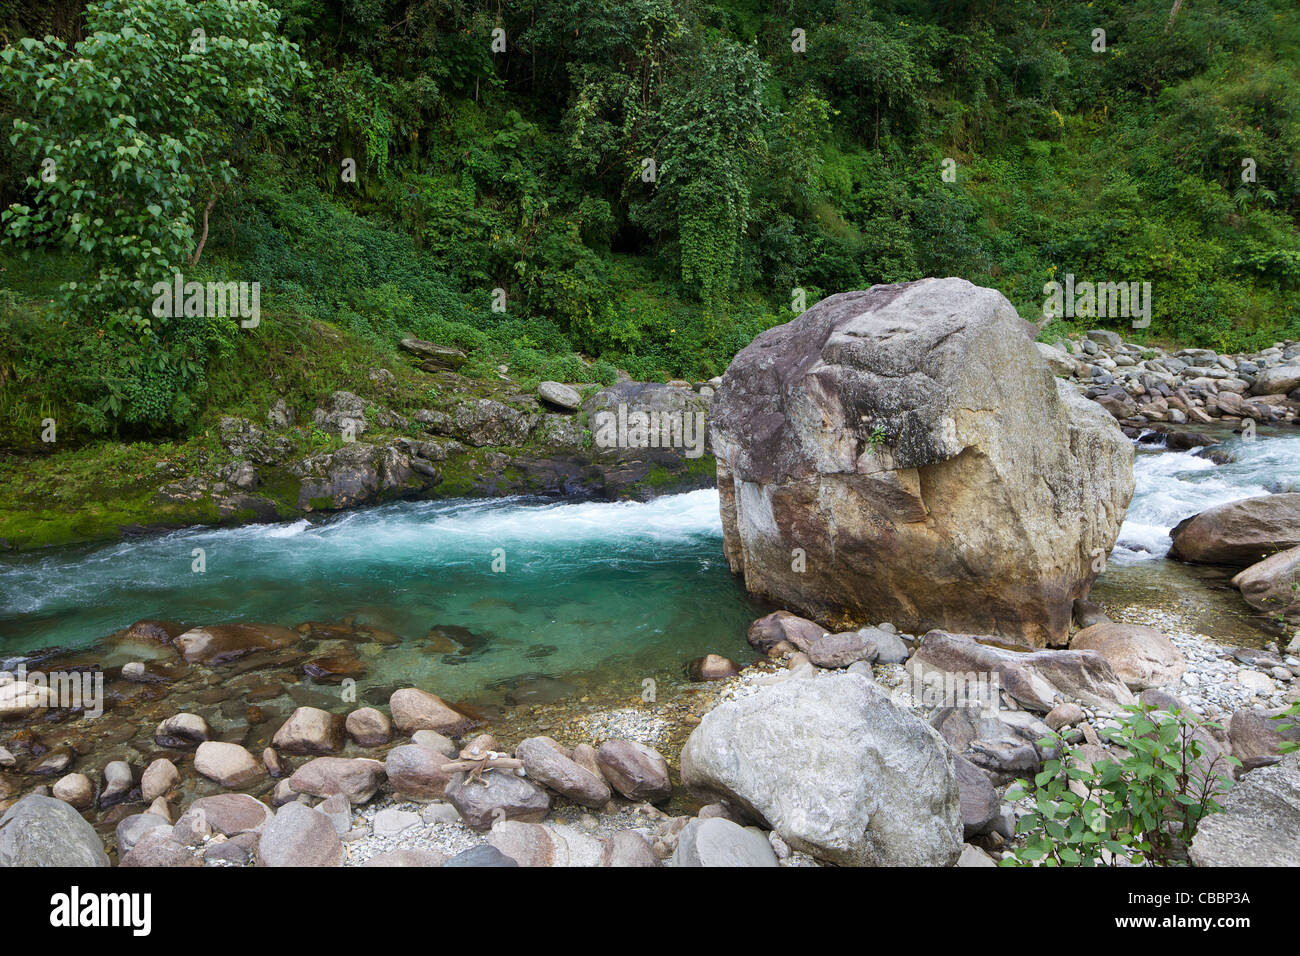 Modi River Valley, près d'Ulleri, sanctuaire de l'Annapurna, Région de l'Himalaya, Népal, Asie Banque D'Images